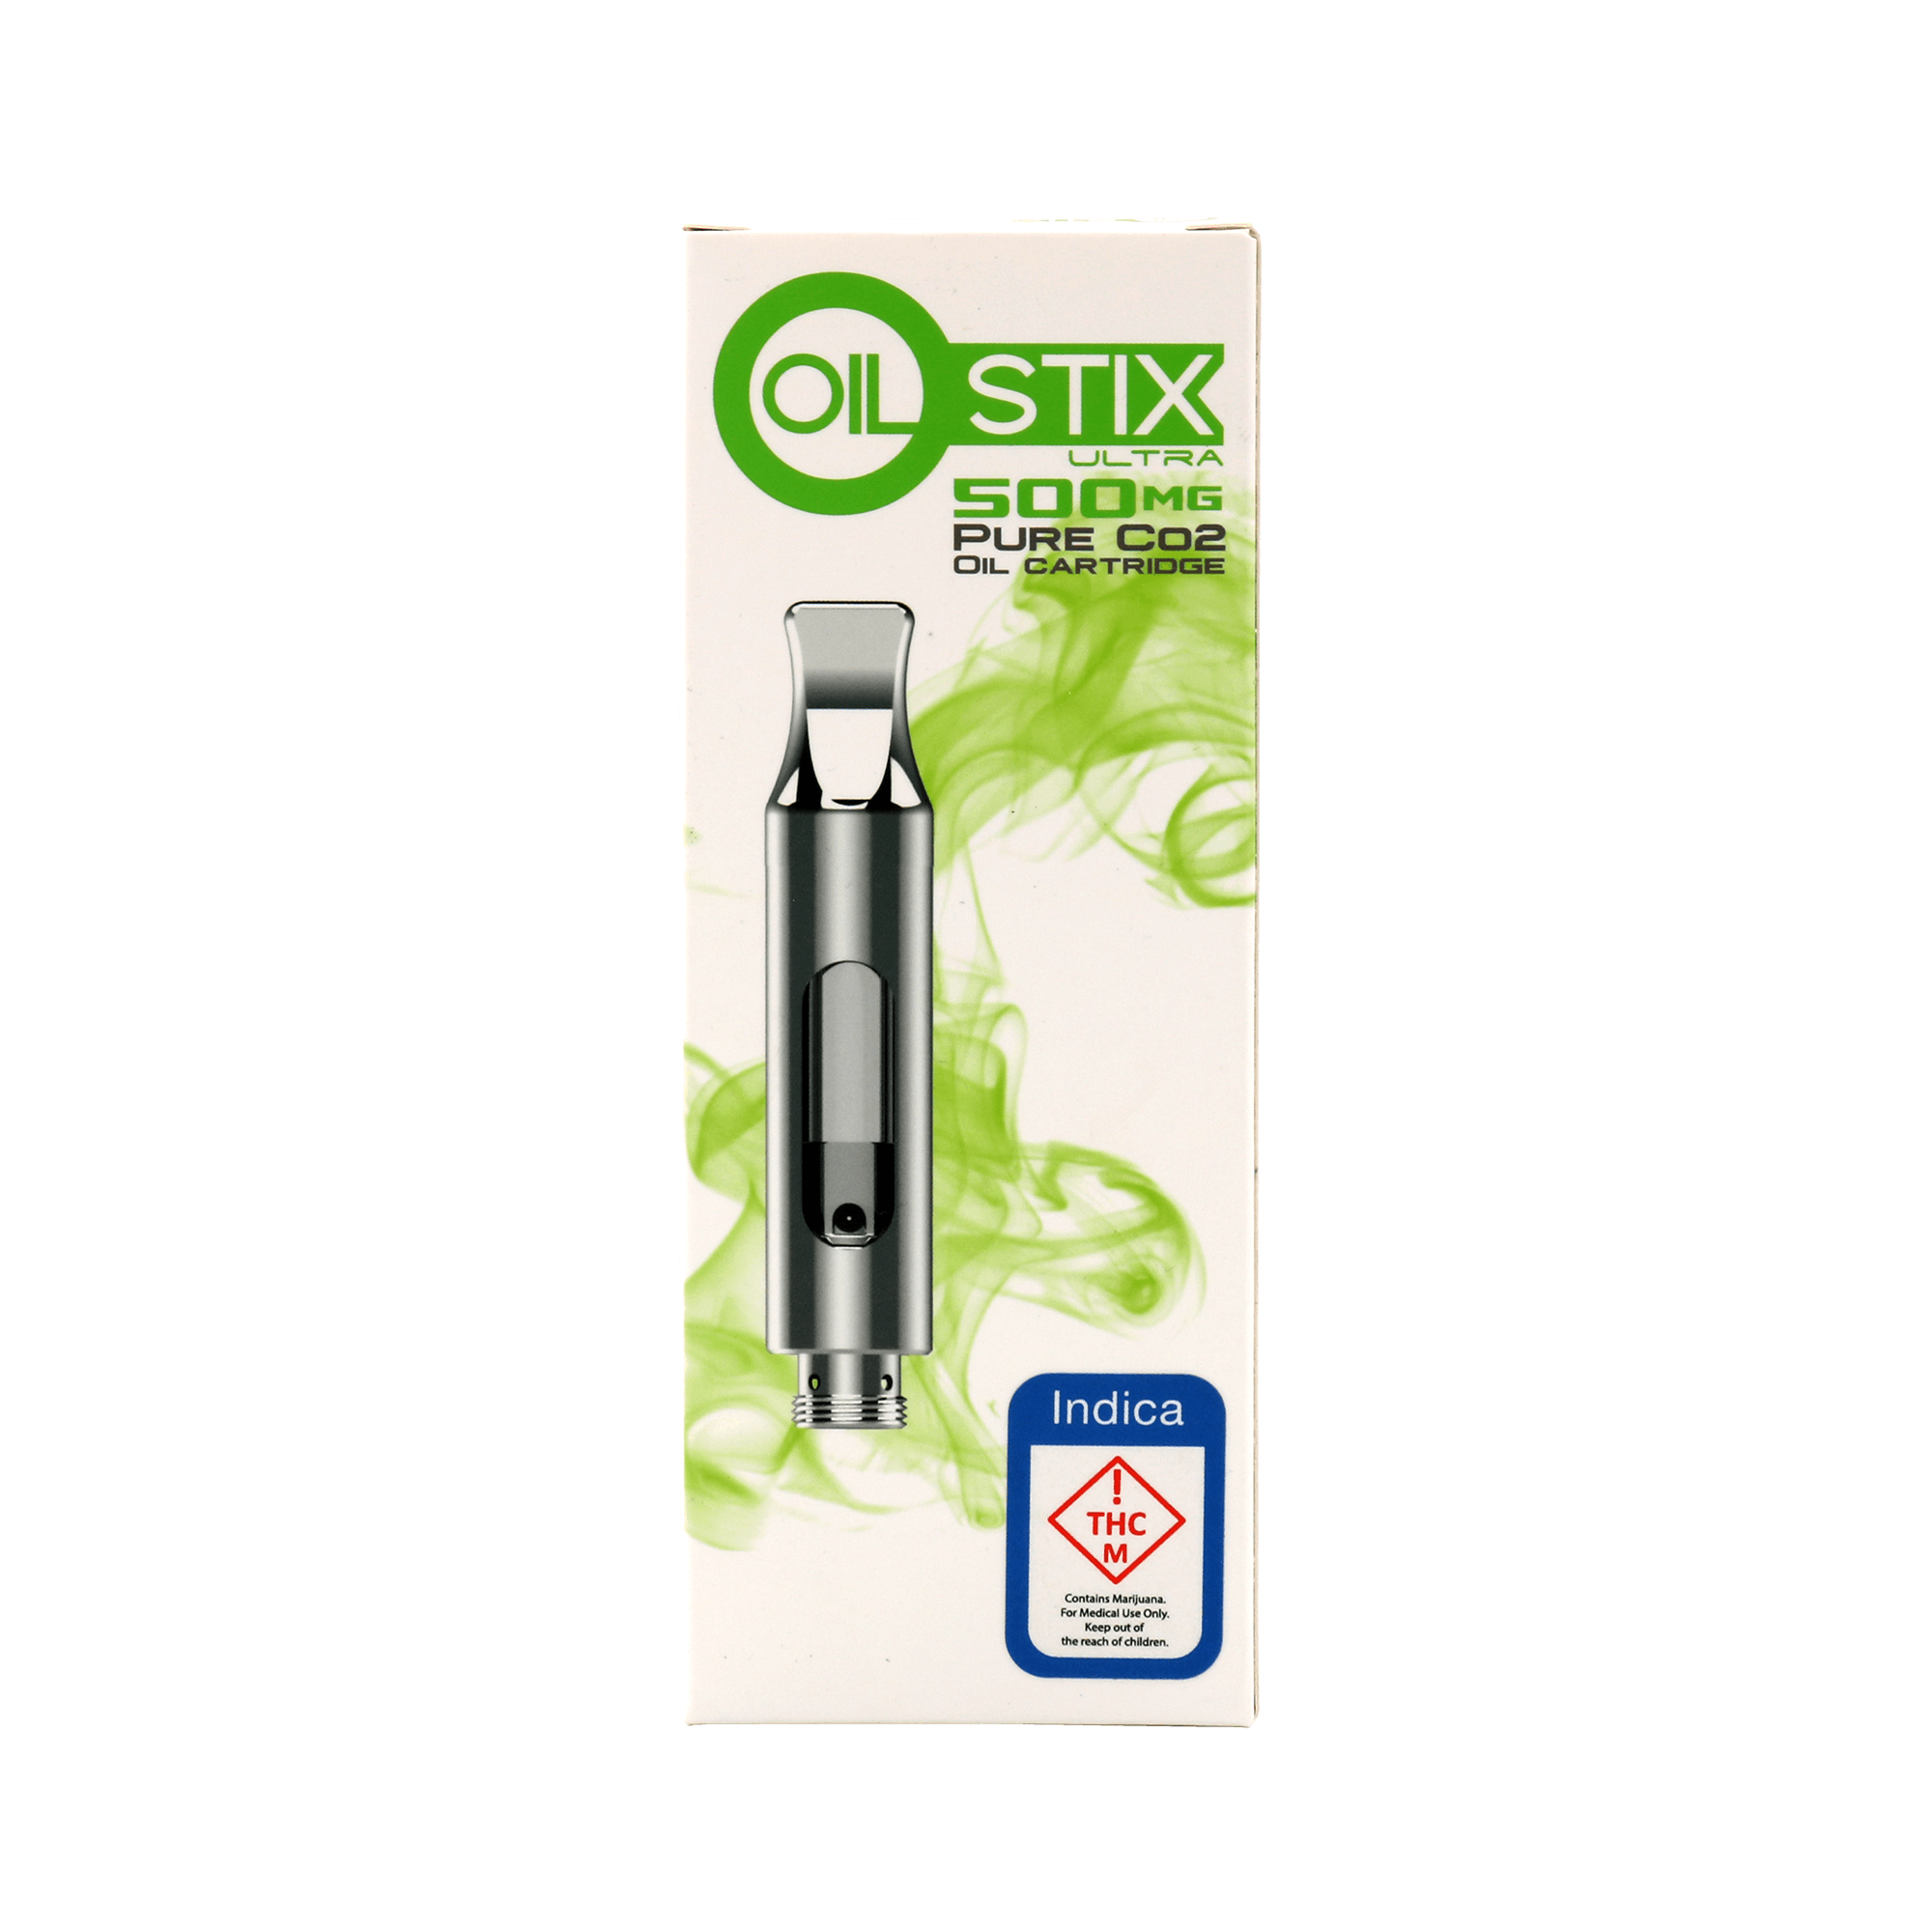 Oil Stix Ultra - Indica - Cartridge